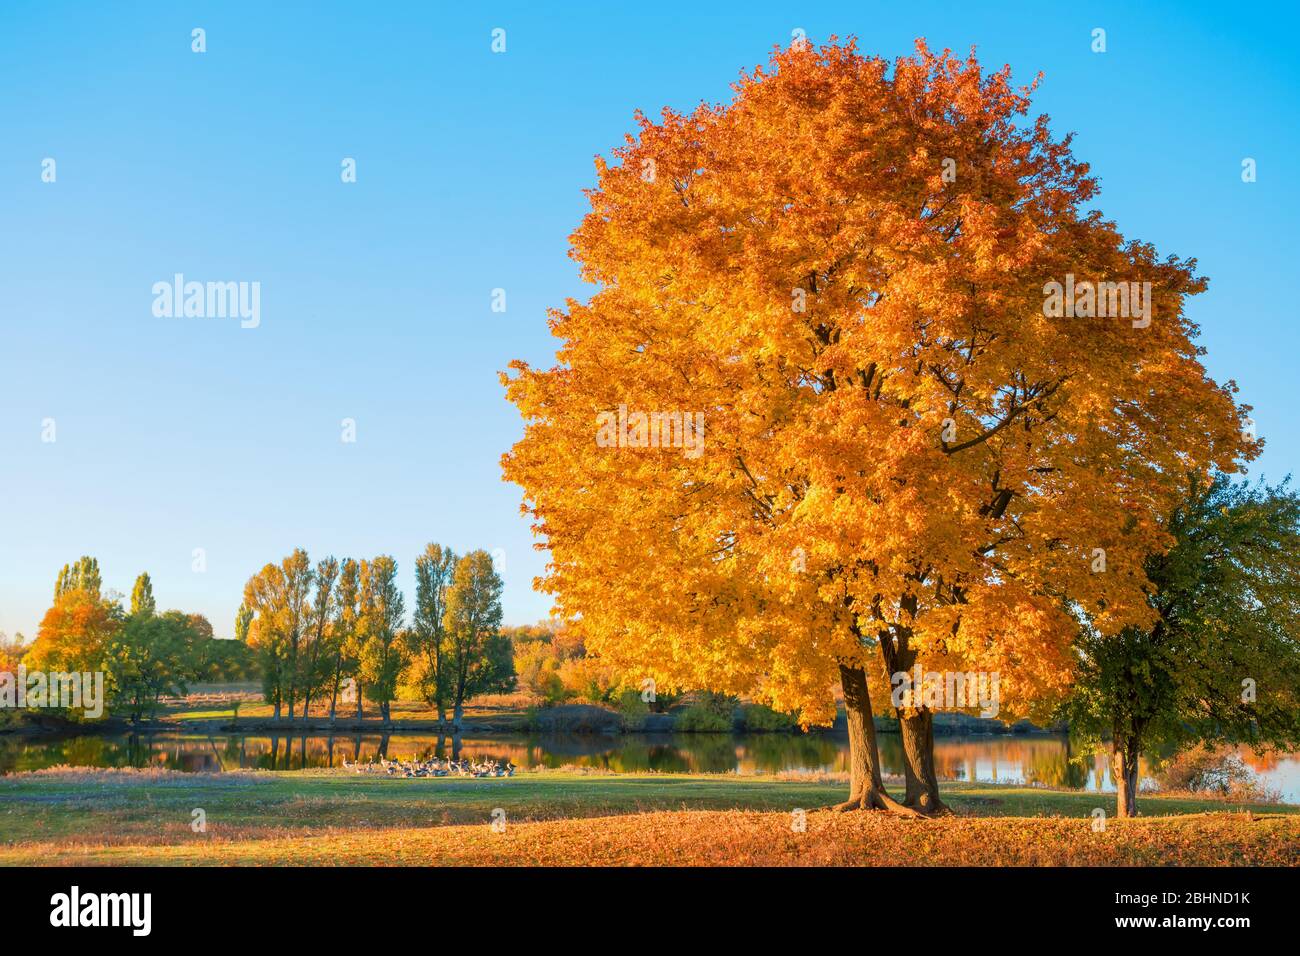 Arbre avec feuillage orange d'automne sur le lac. Sur la rive un troupeau d'oies. Bleu sans ciel nuageux. Paysage rural d'automne Banque D'Images